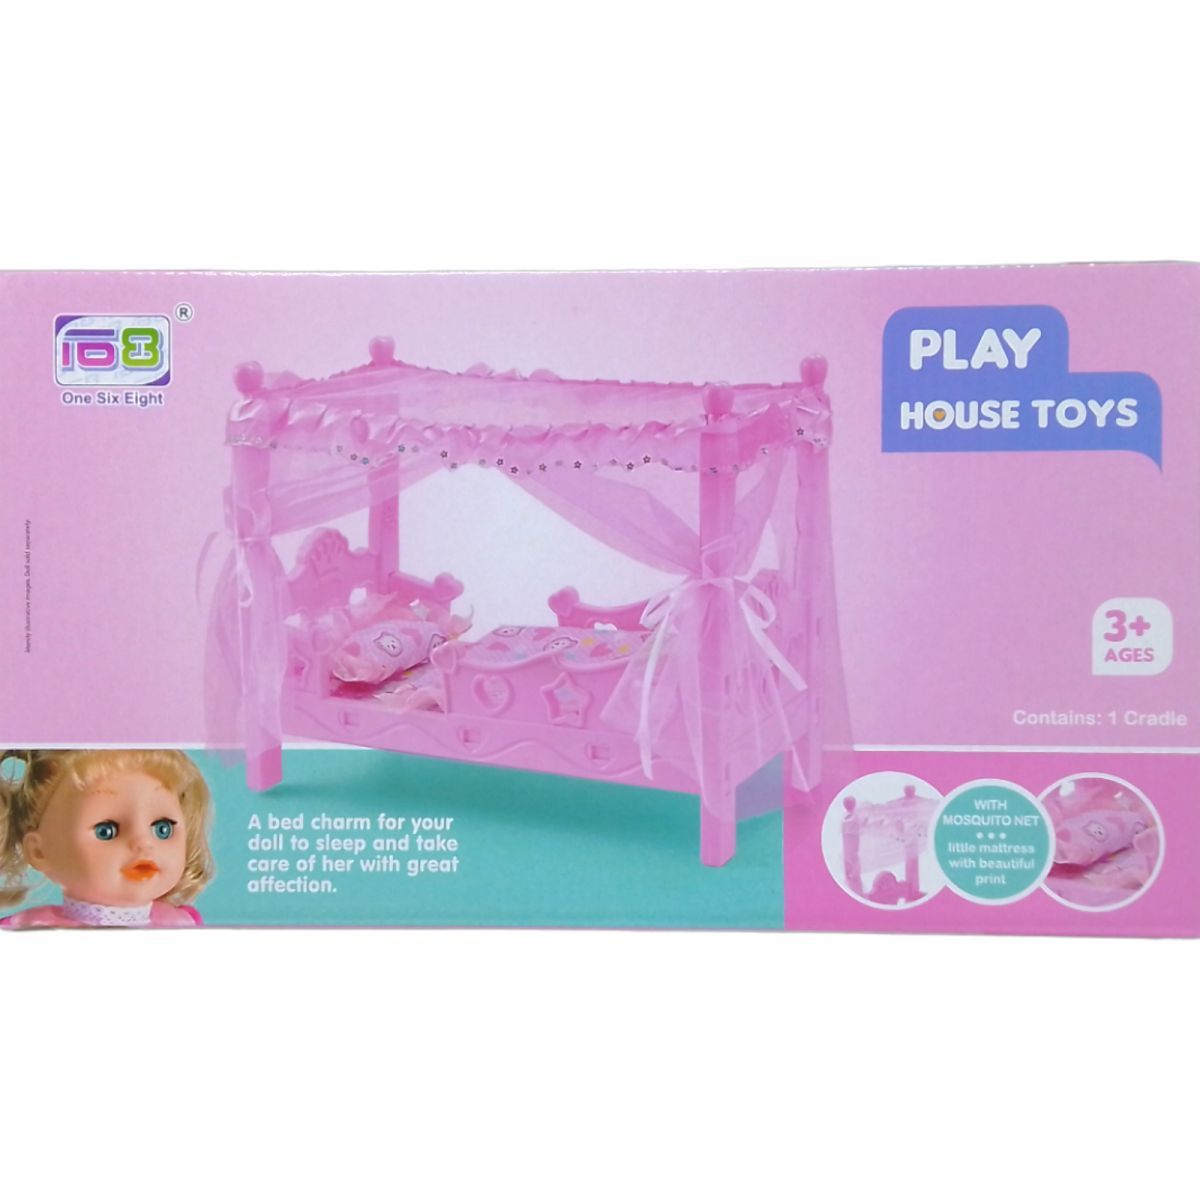 Уцінка.  Ліжко для ляльки "Playhouse toys" дефект в пластику, прим'ята упаковка